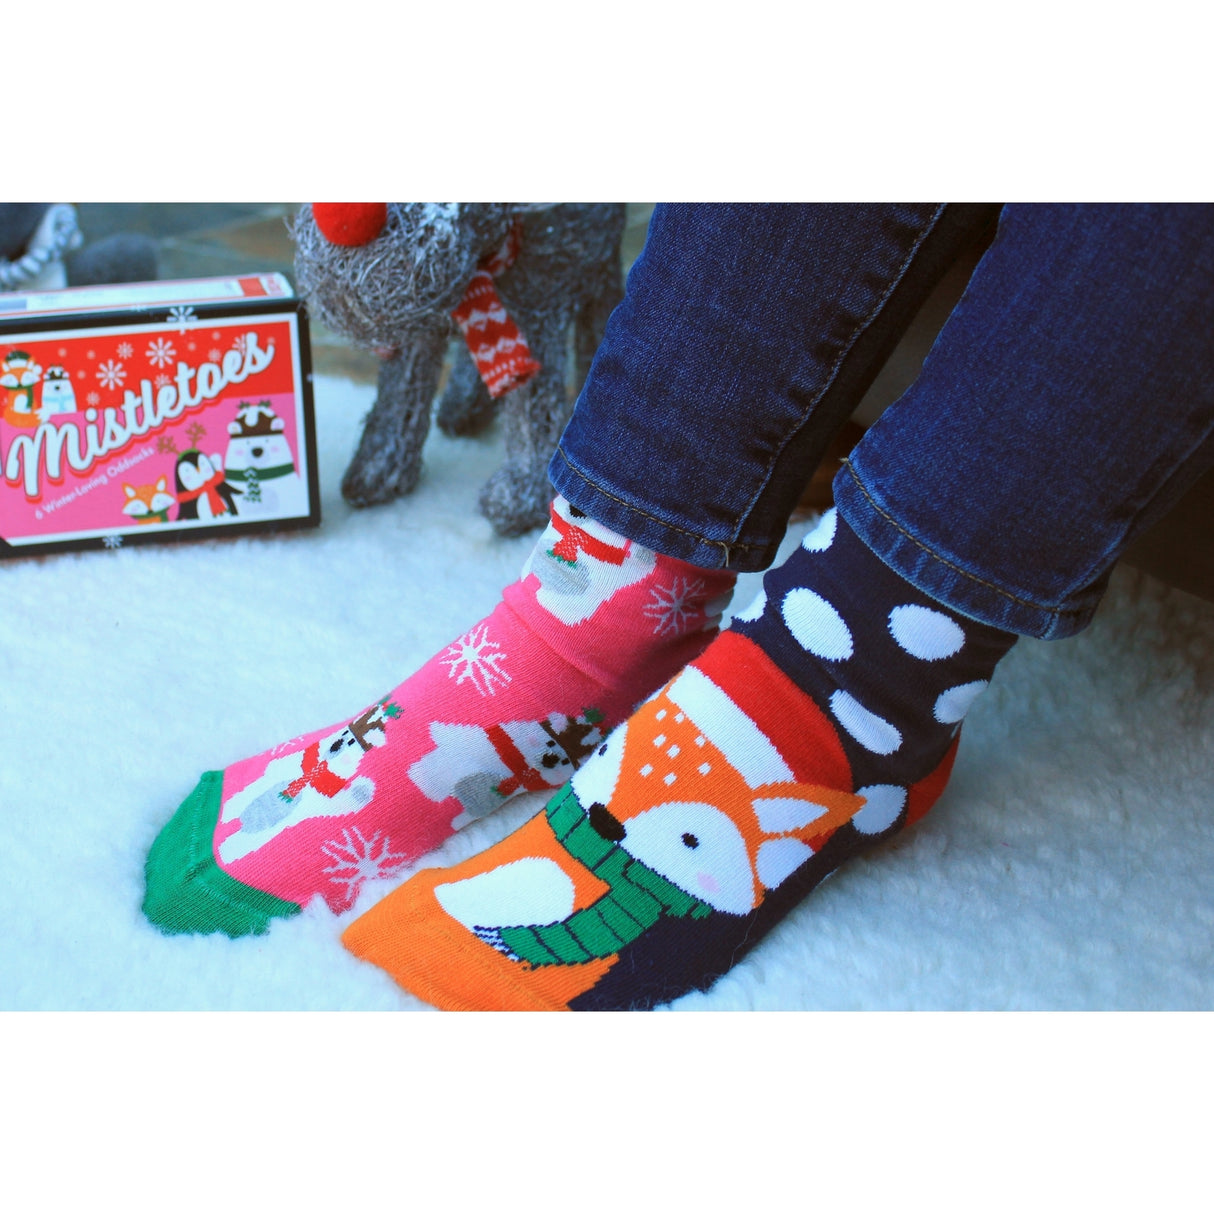 Mistletoes Weihnachten Oddsocks Socken in 37-42 im 6er Set